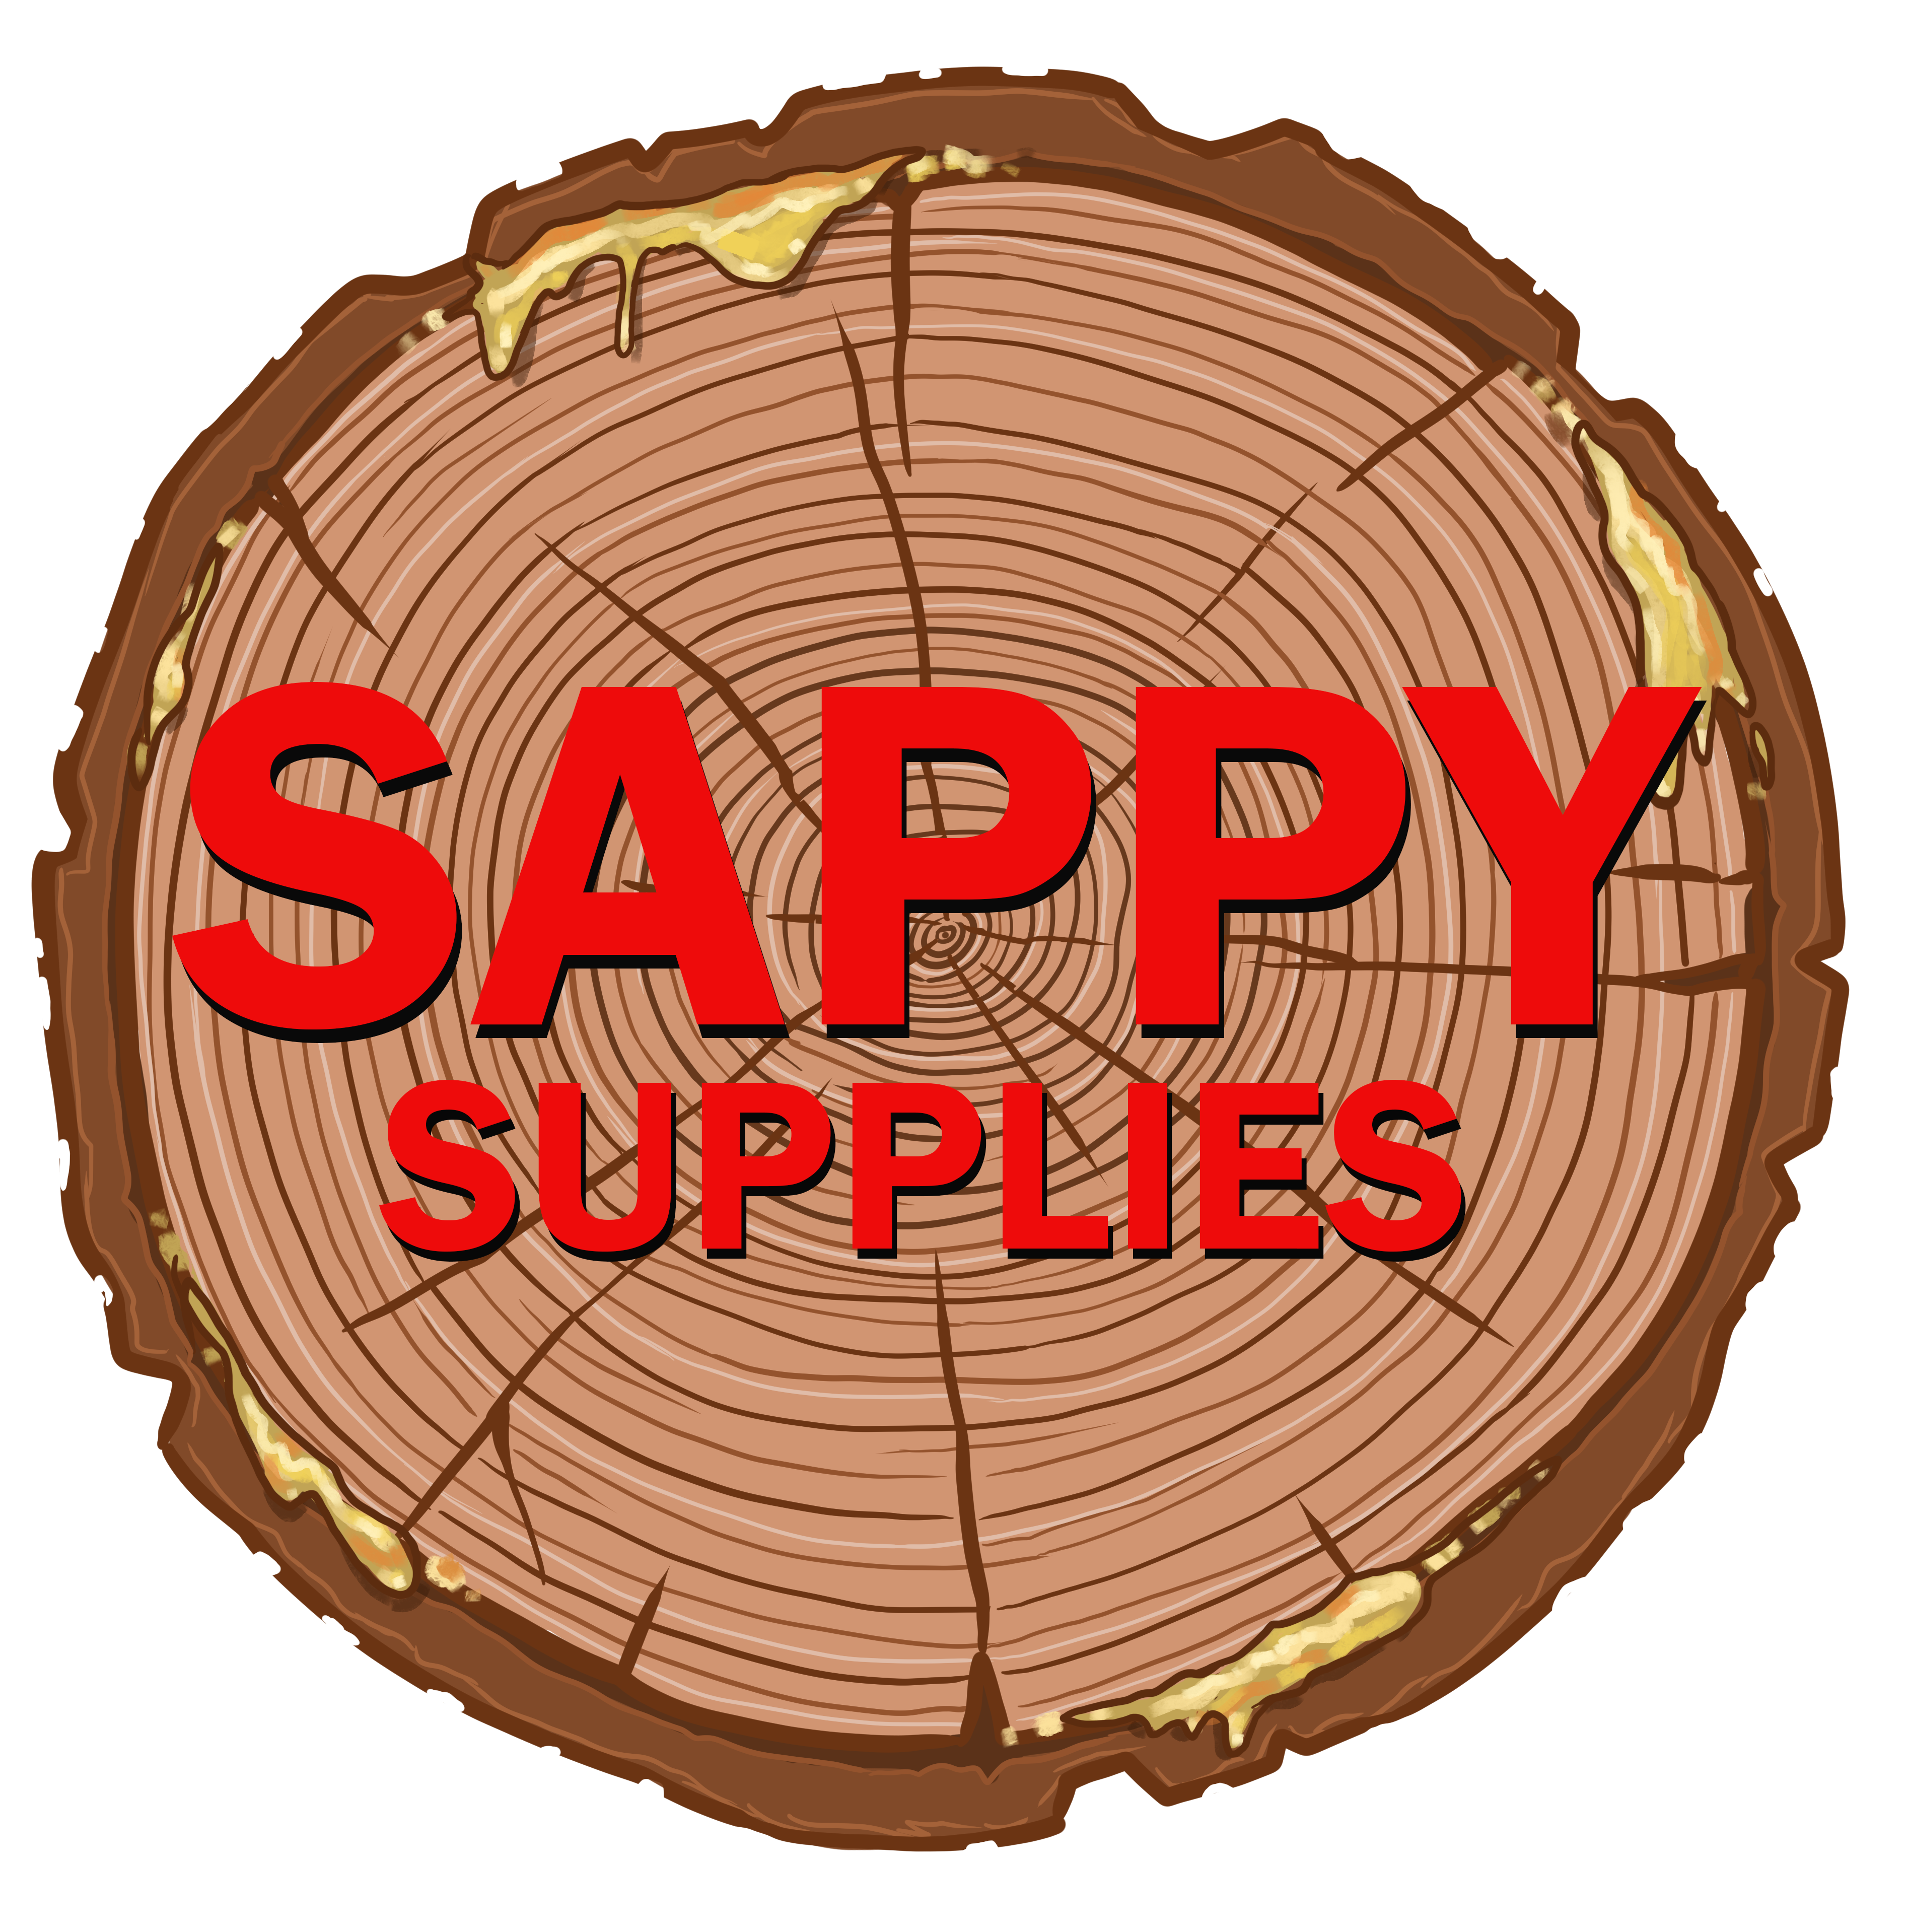 Sappy Supplies Sticker